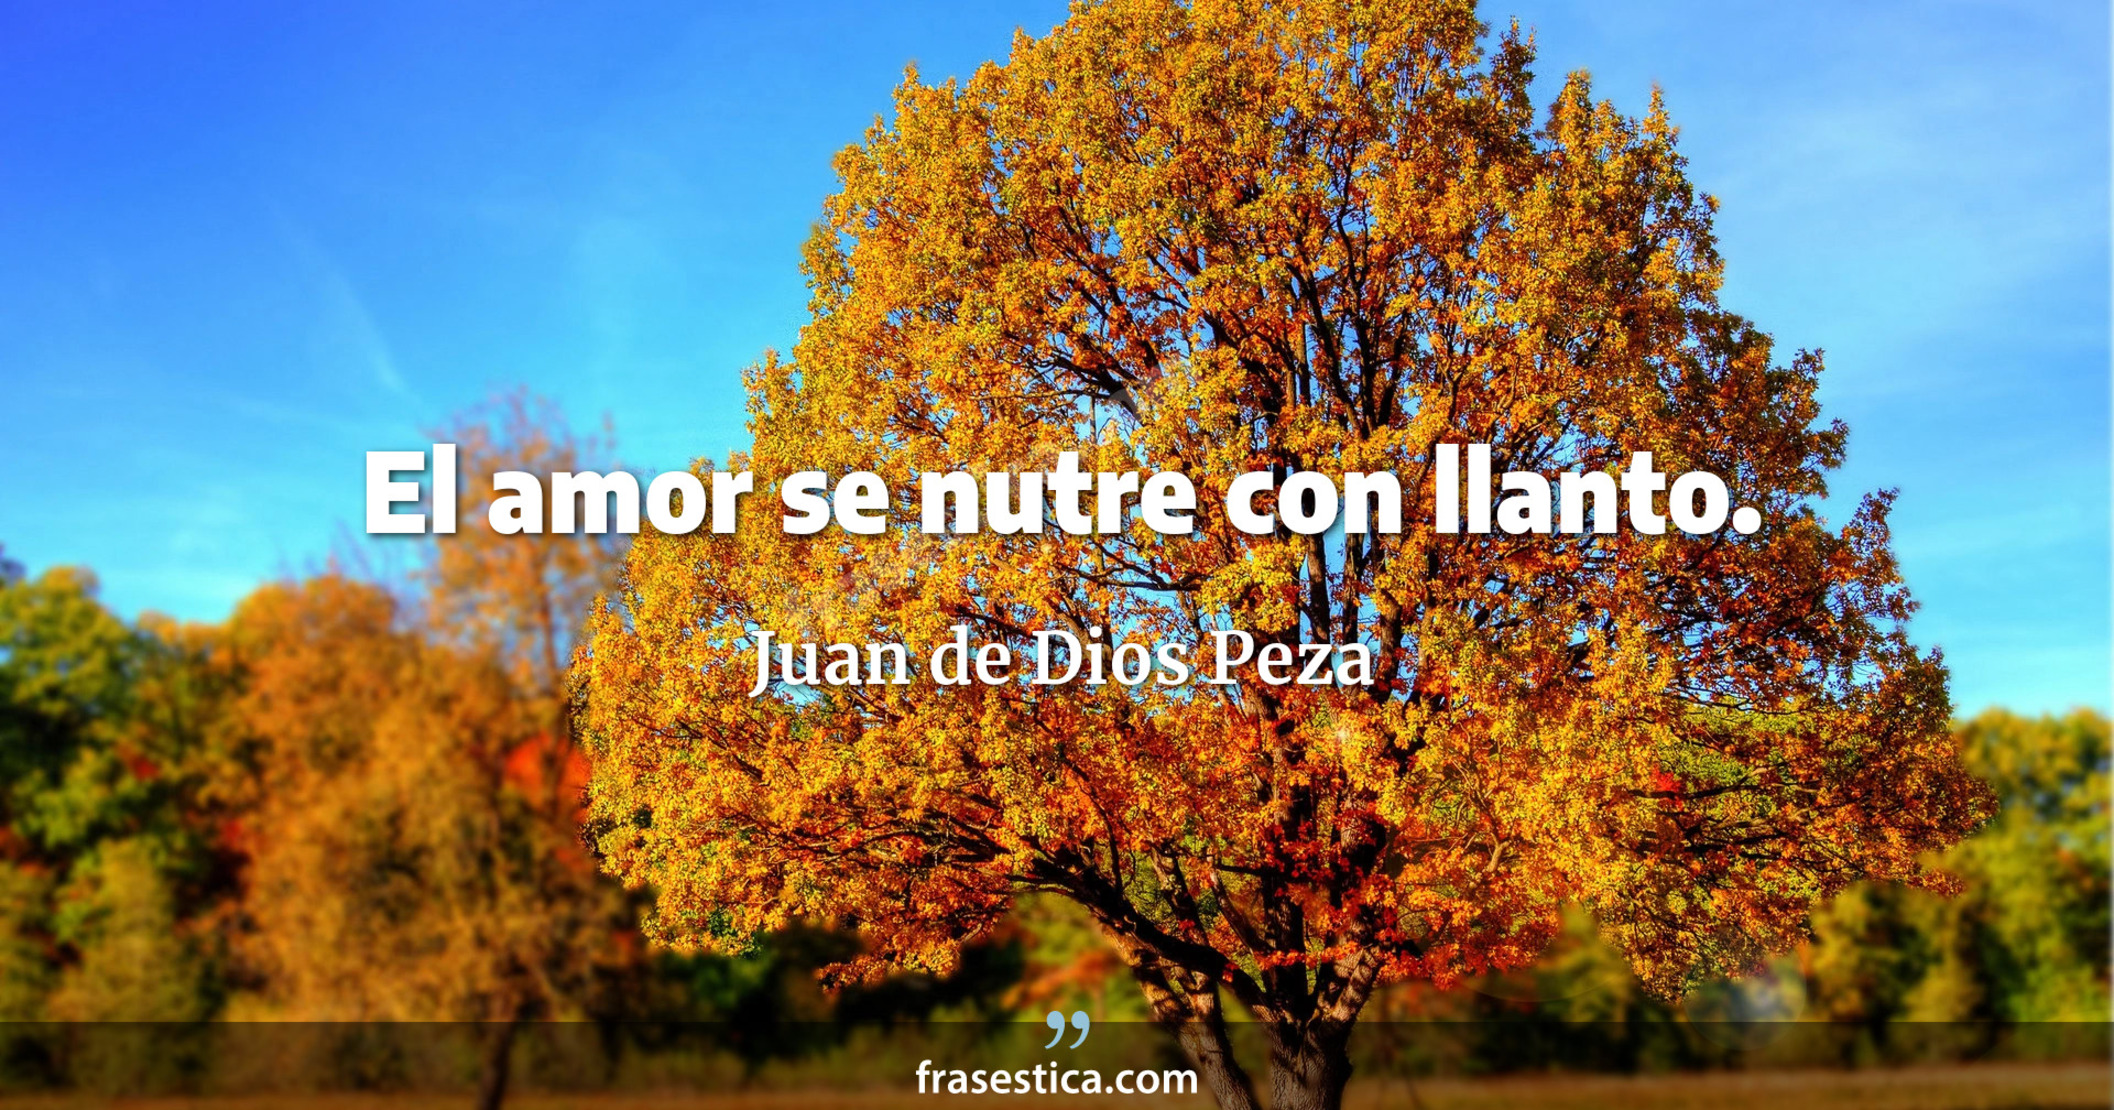 El amor se nutre con llanto. - Juan de Dios Peza